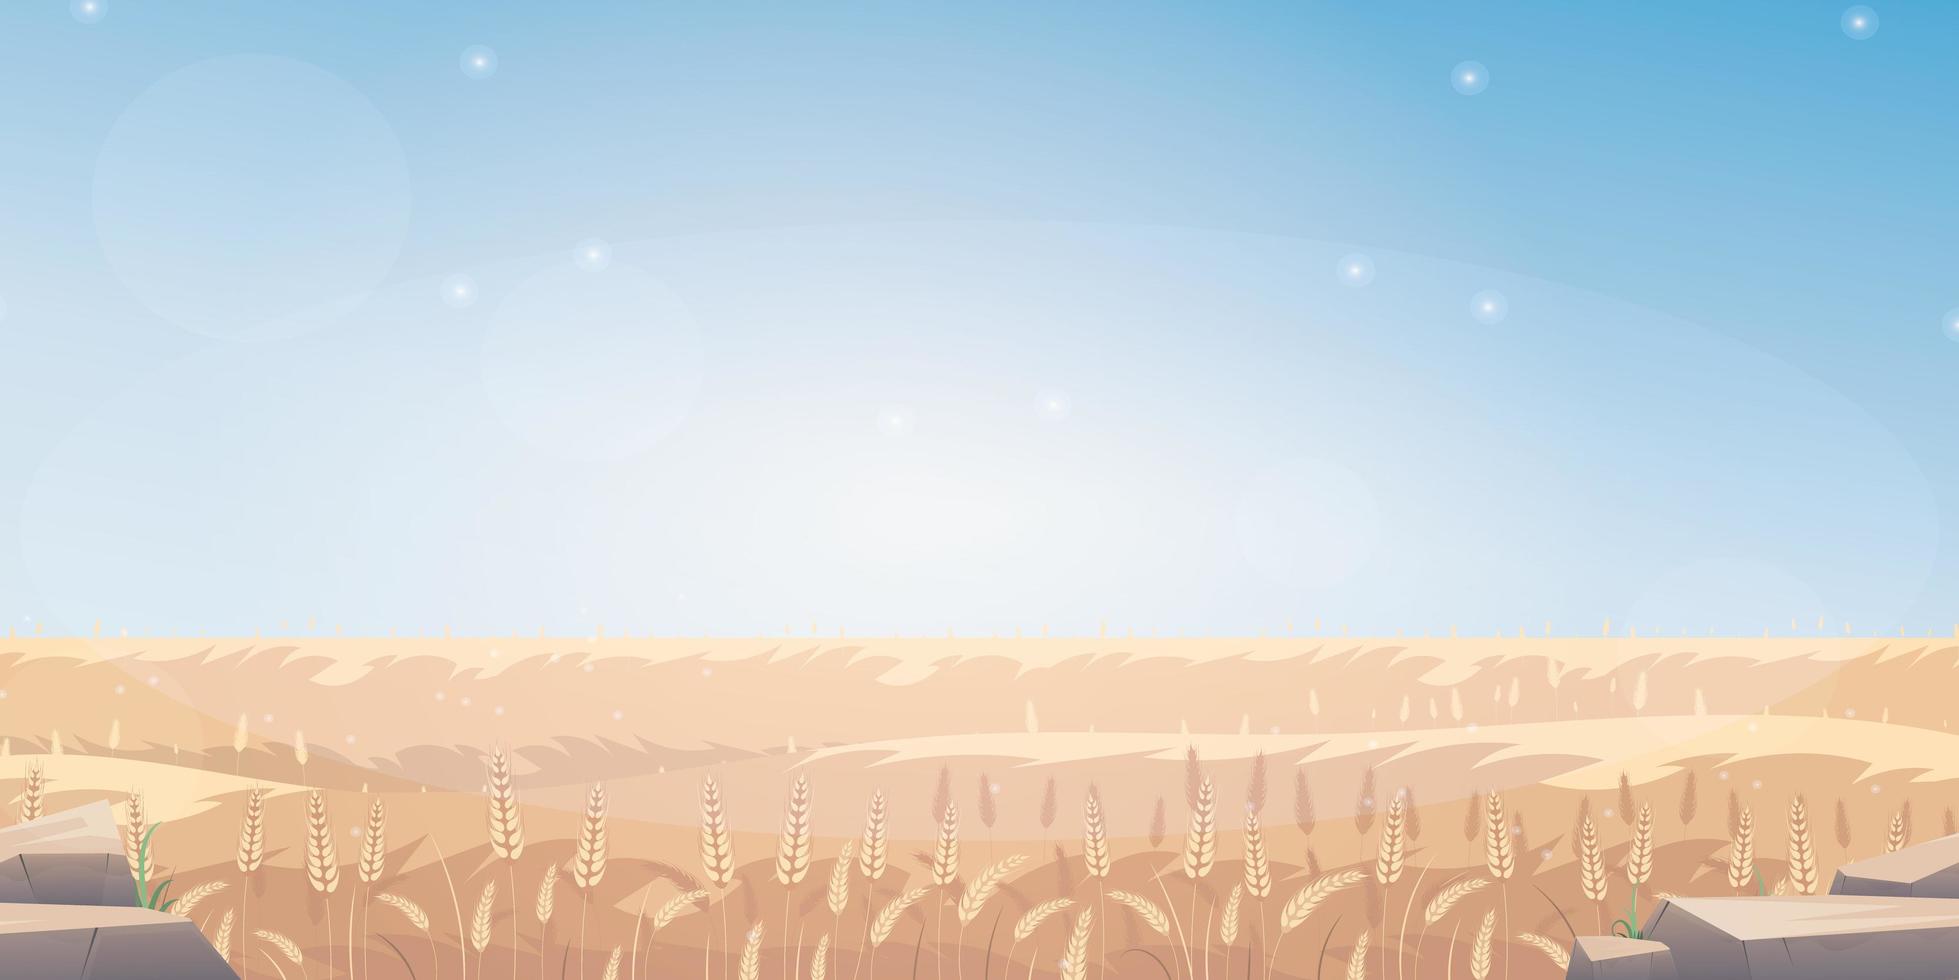 paisagem rural com campo de trigo e o céu azul no fundo. ilustração vetorial. vetor